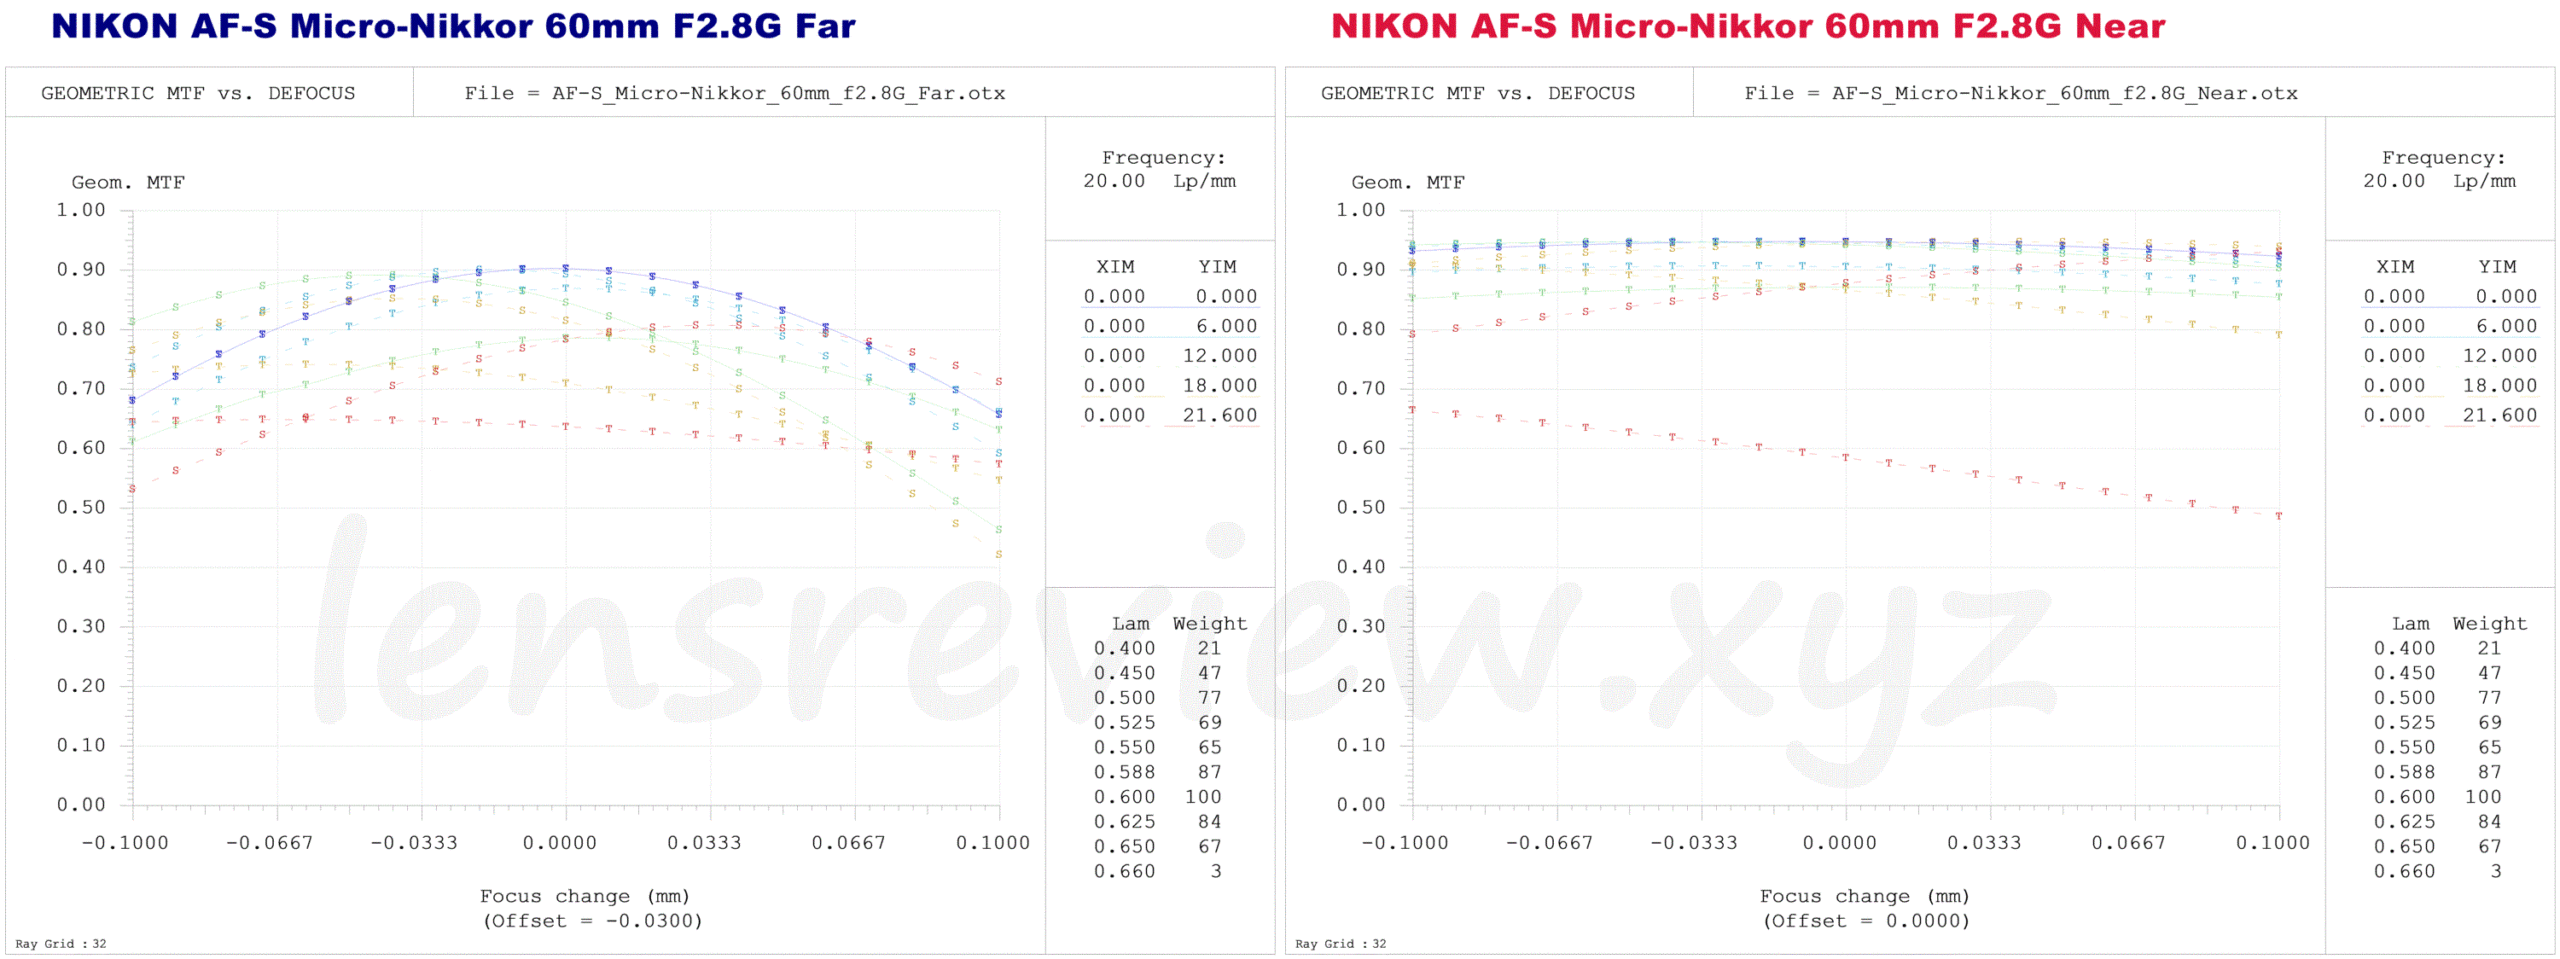 レンズのプロが解説】NIKON AF-S Micro-Nikkor 60mm F2.8G ED -分析070 